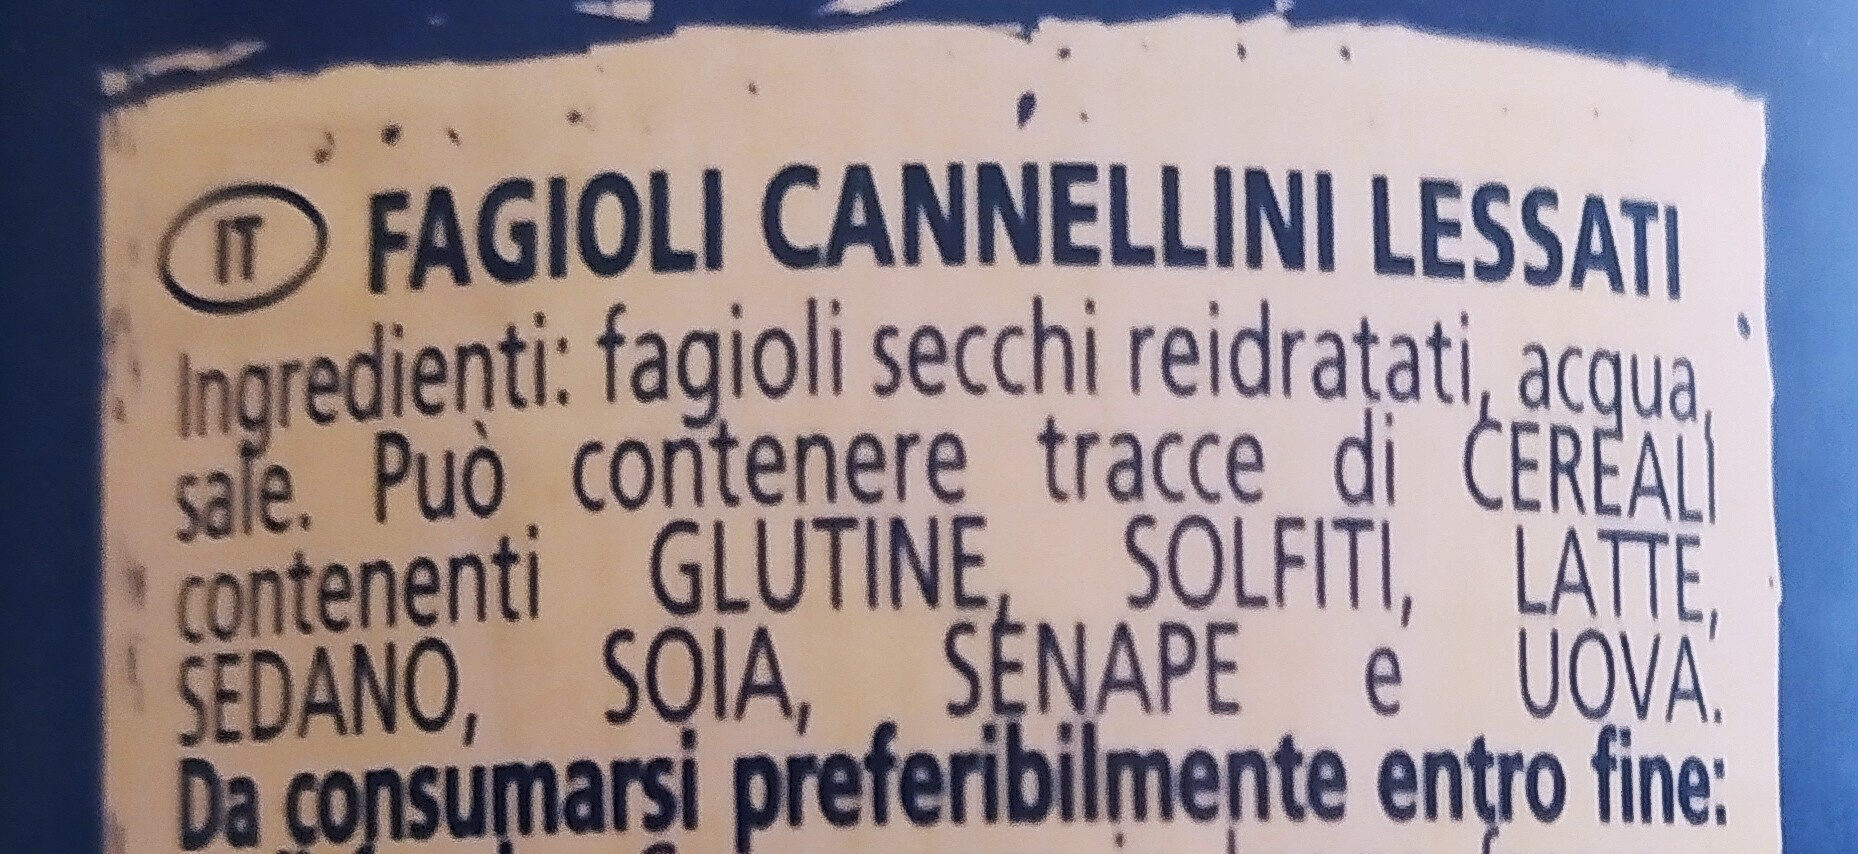 Fagioli cannelini - Ingredienti